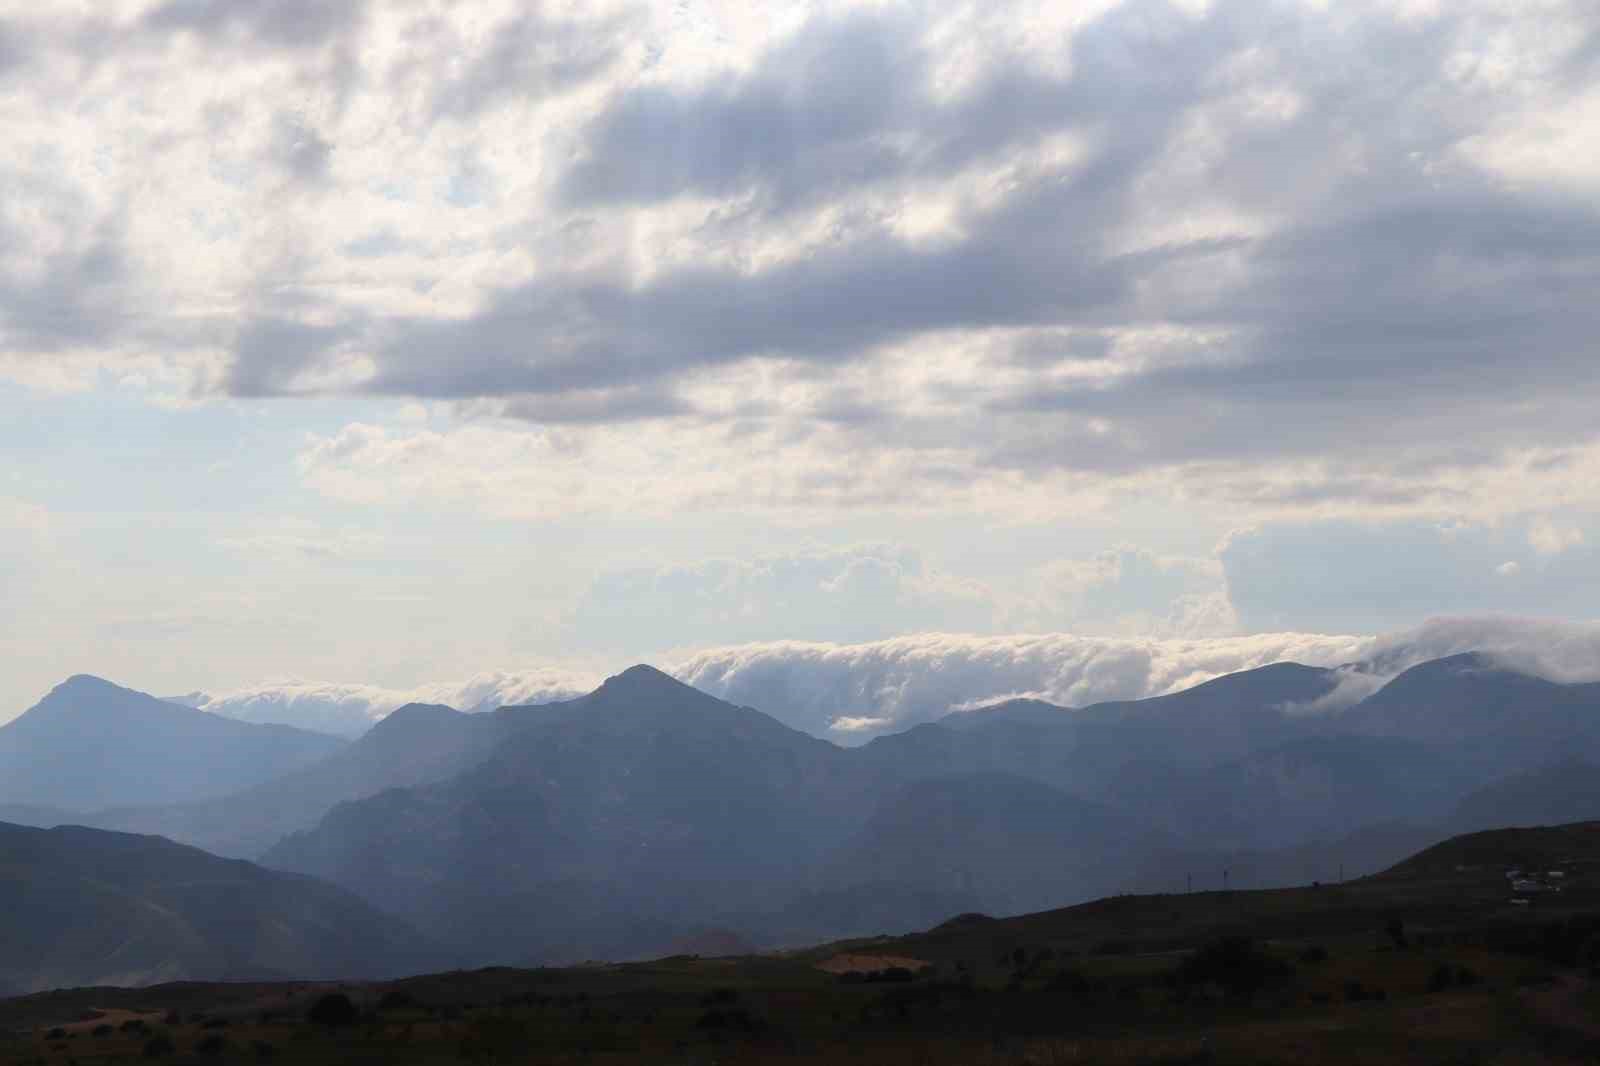 Sis bulutları Kivi Dağı’nda şelale görüntüsü oluşturdu